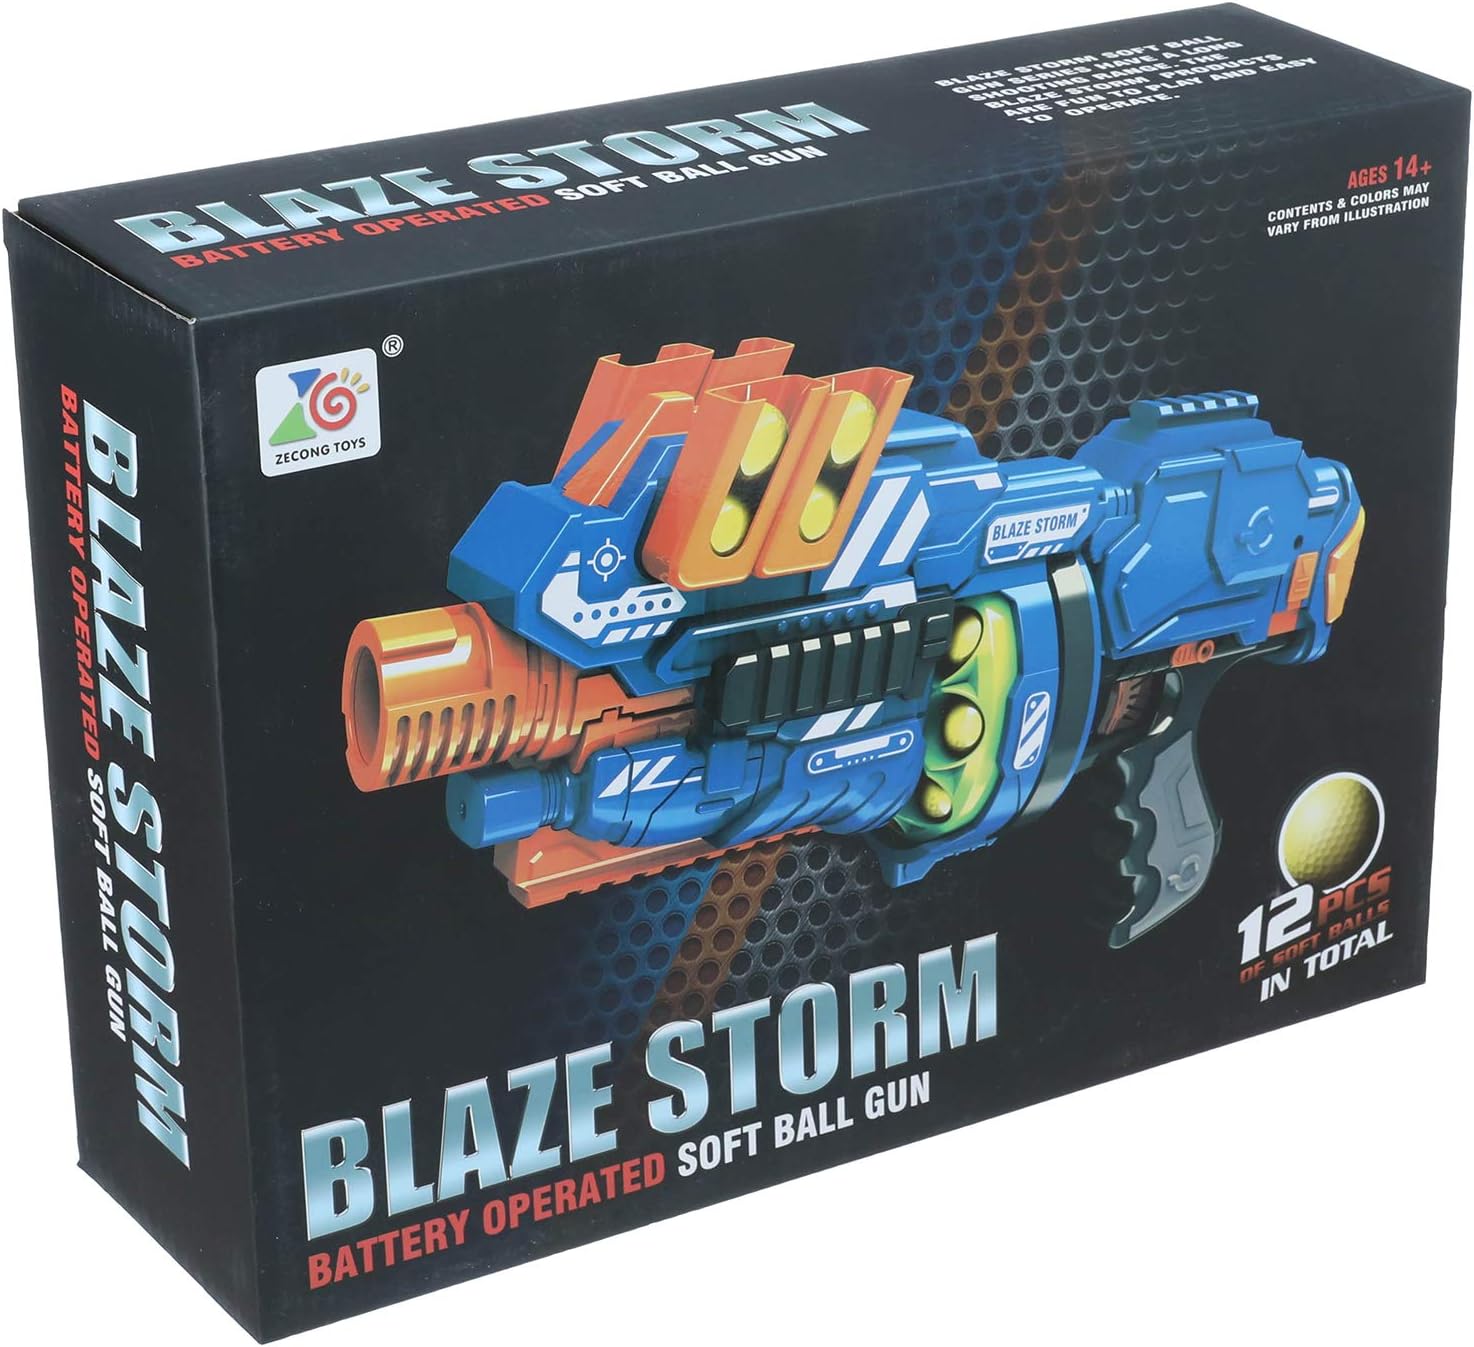 Blaze Storm Battery Operated Soft Ball Gun ZC7087